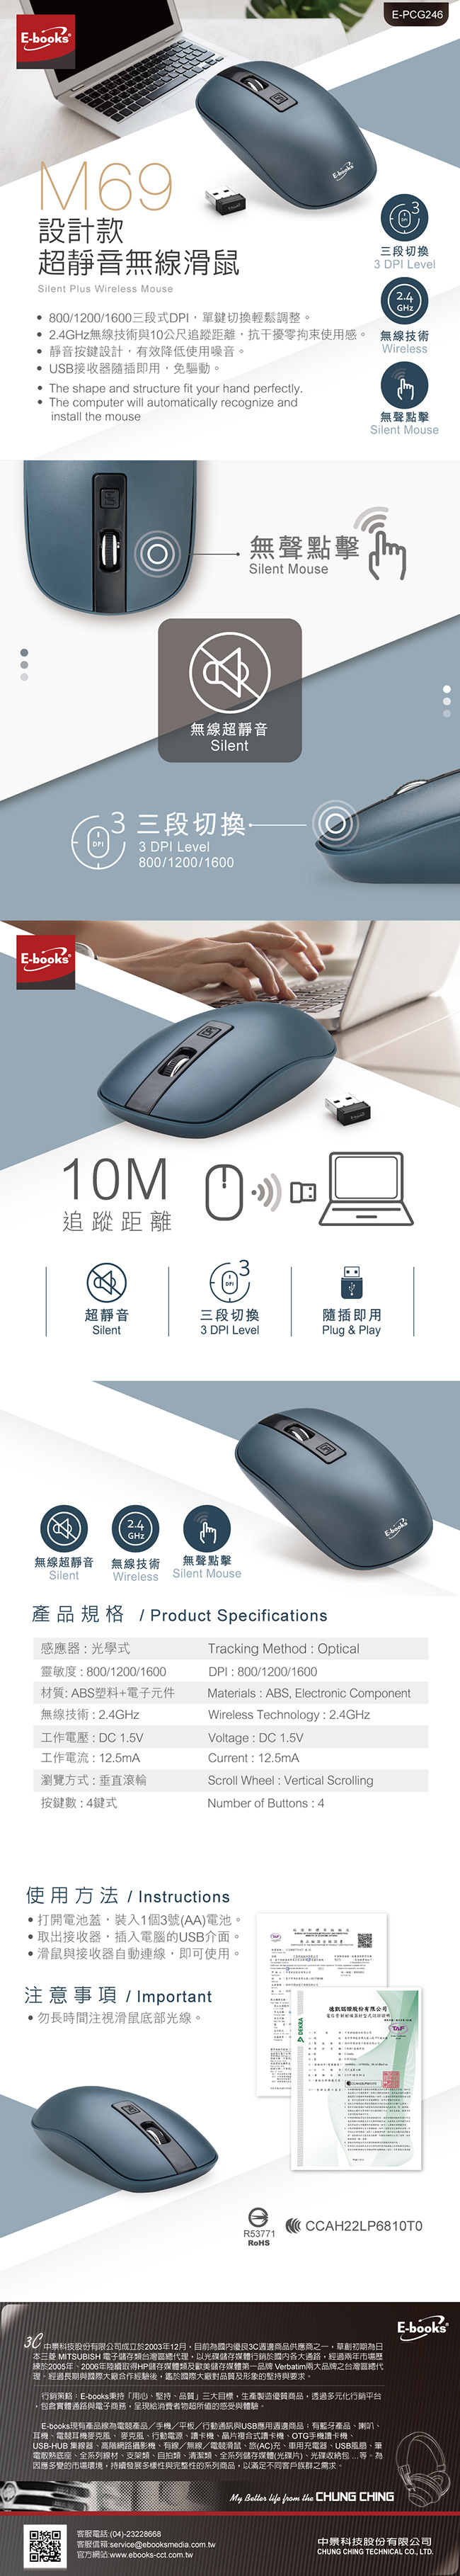 【E-books】設計款三段切換 2.4G無線靜音滑鼠 ( M.69 )